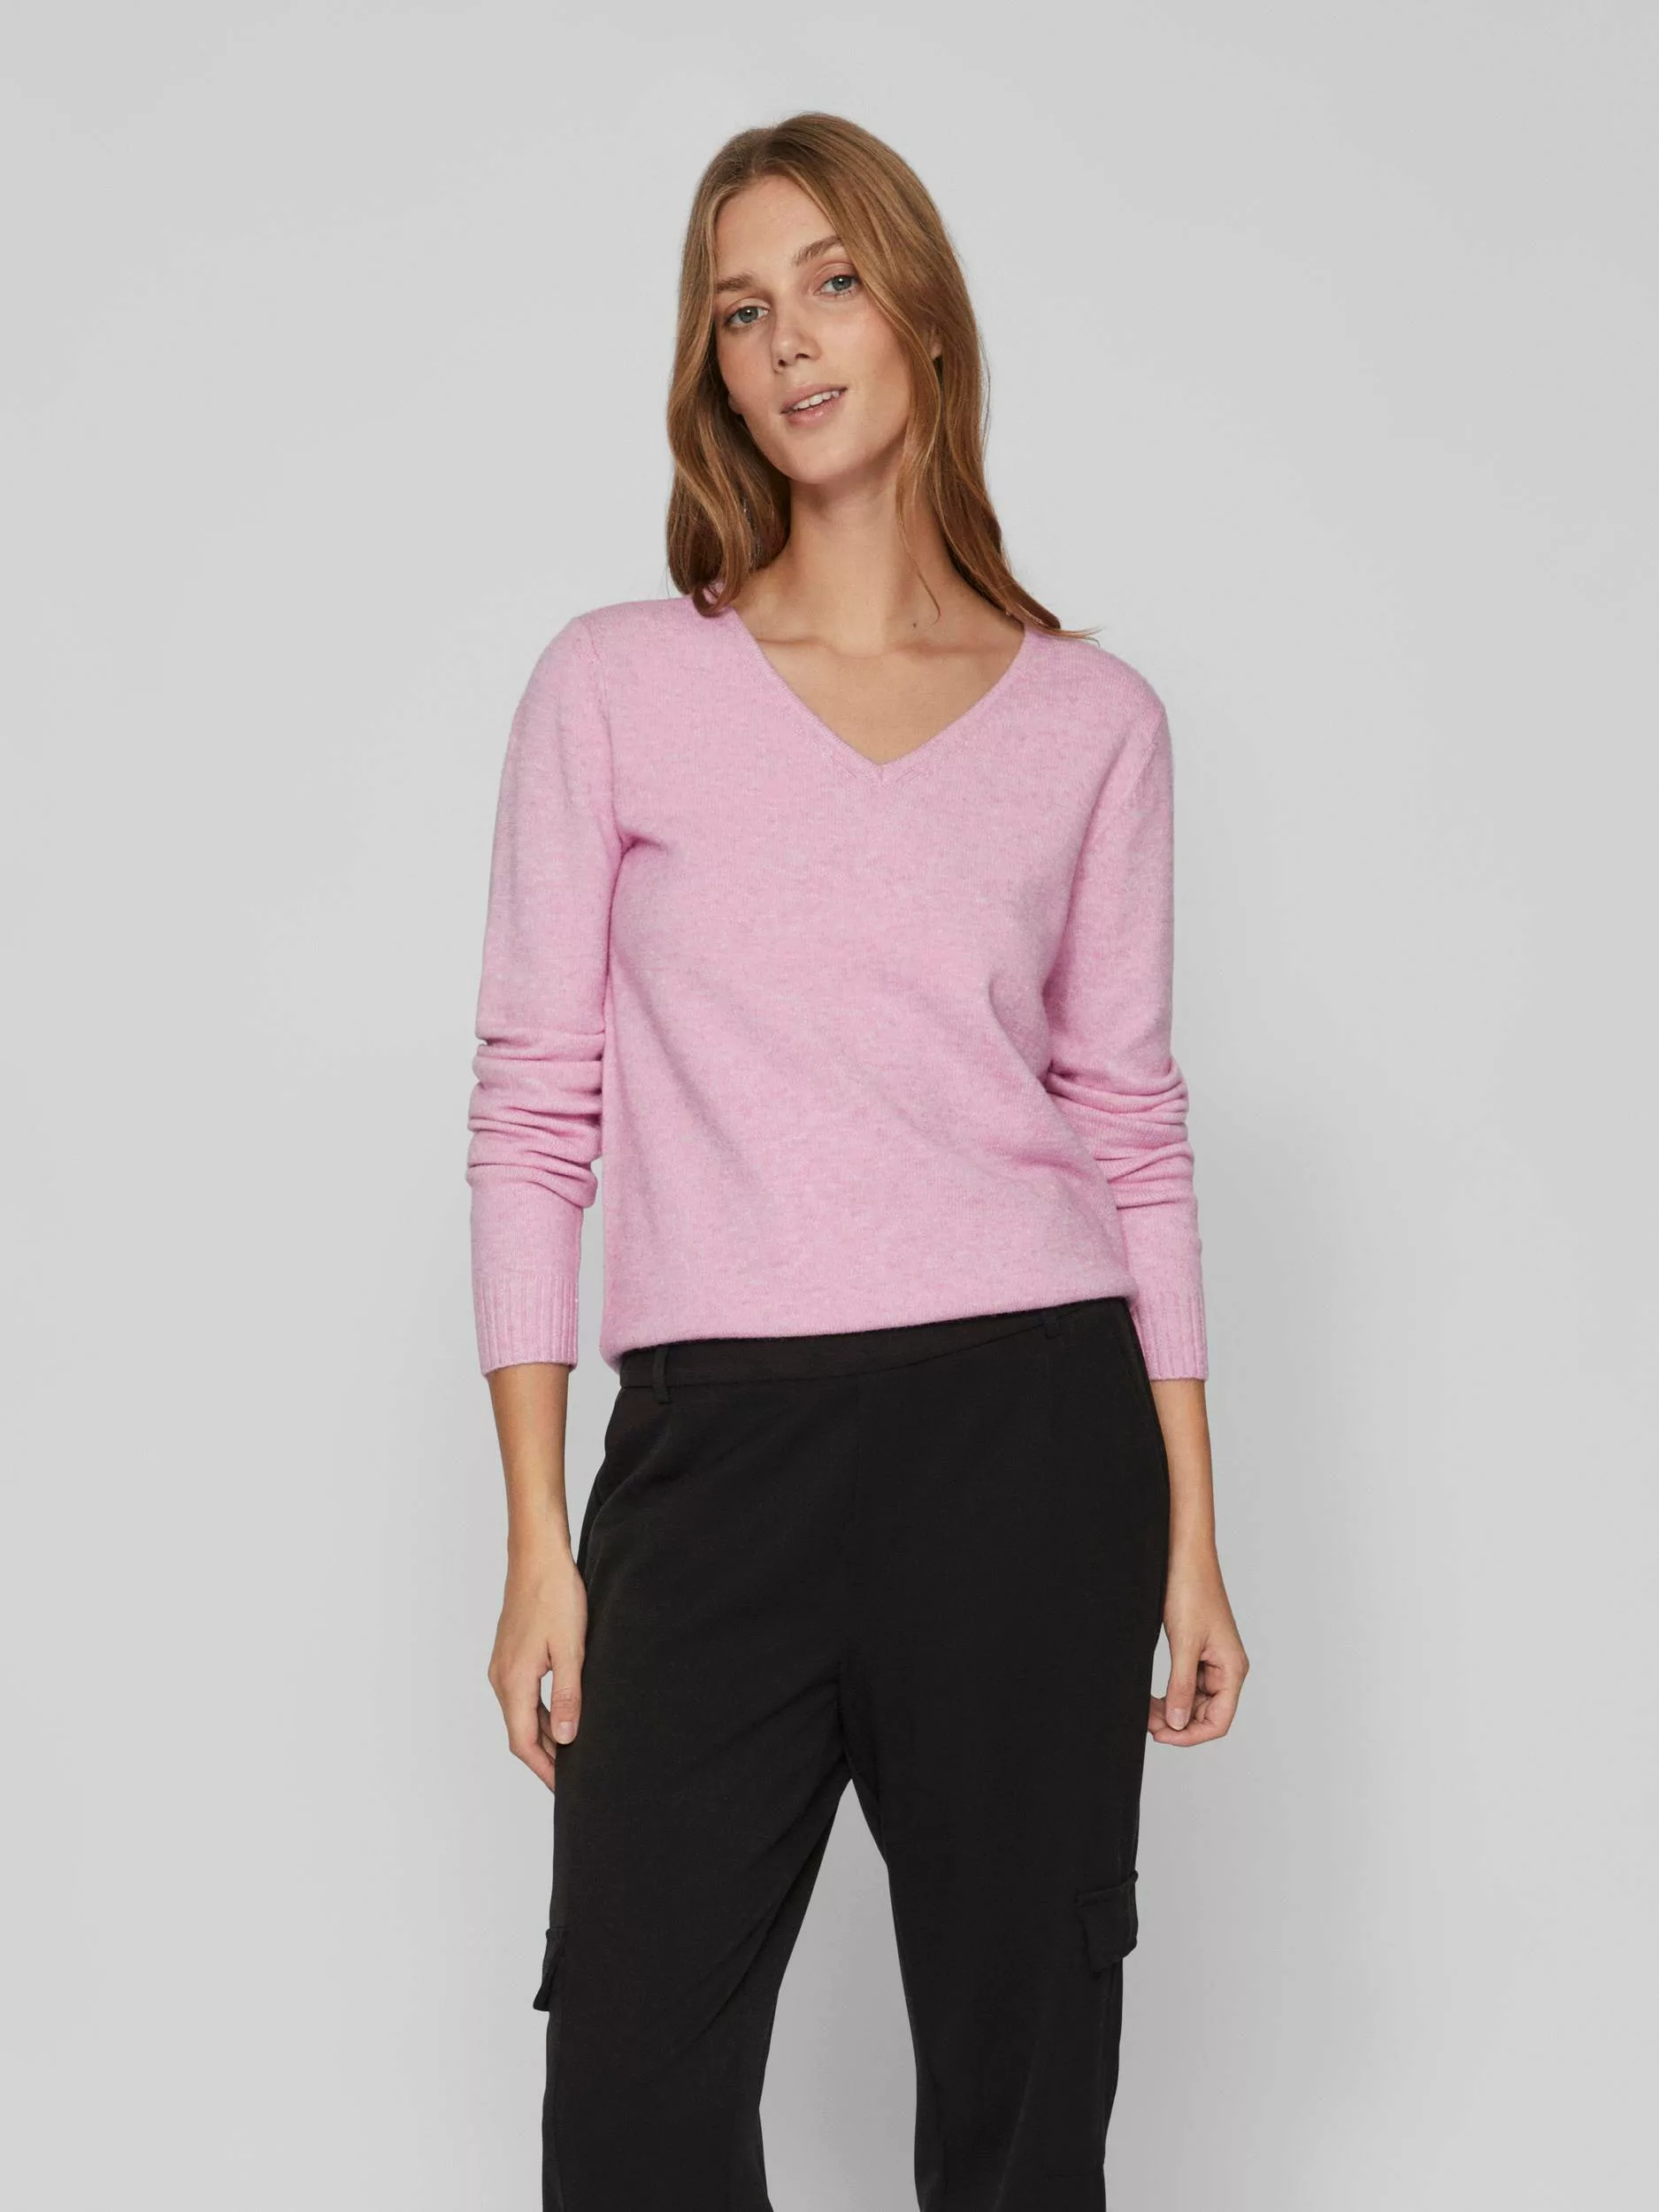 Vila Strickpullover Dünner Strickpullover Basic Stretch Sweater VIRIL 4595 günstig online kaufen